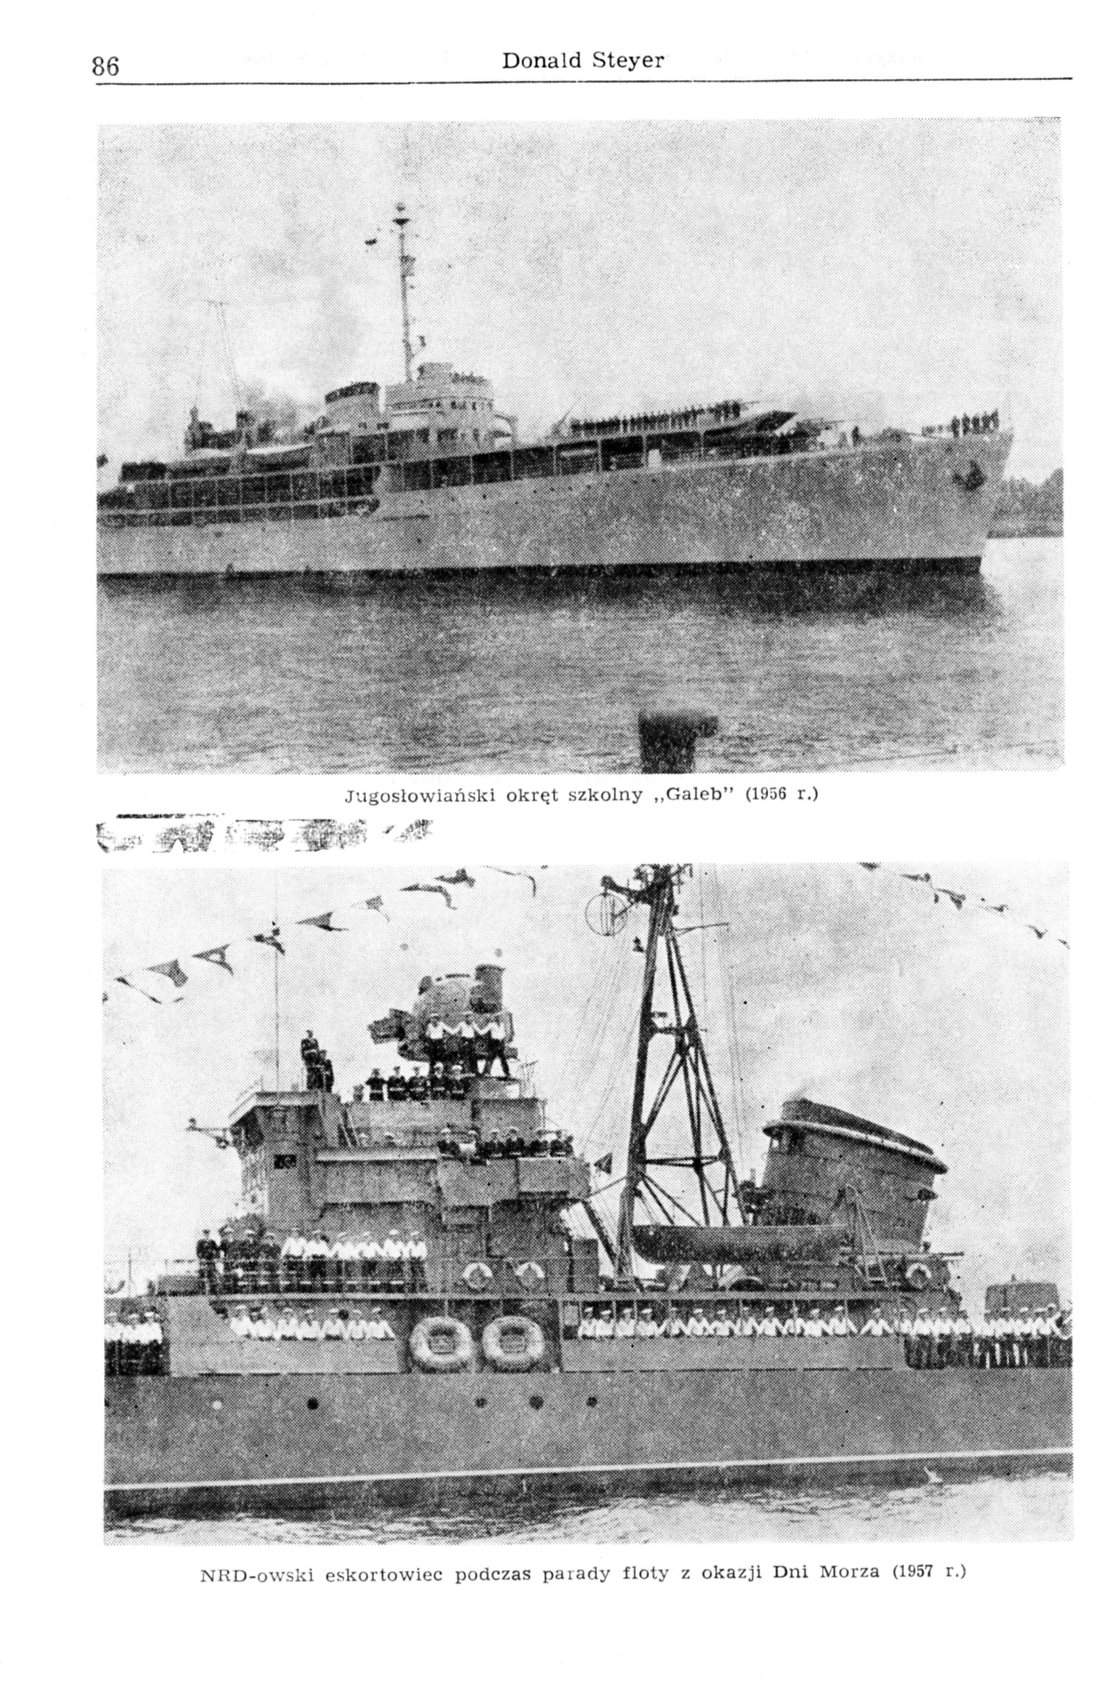 Wizyty zagranicznych okrętów wojennych w porcie gdyńskim w latach 1945-1965